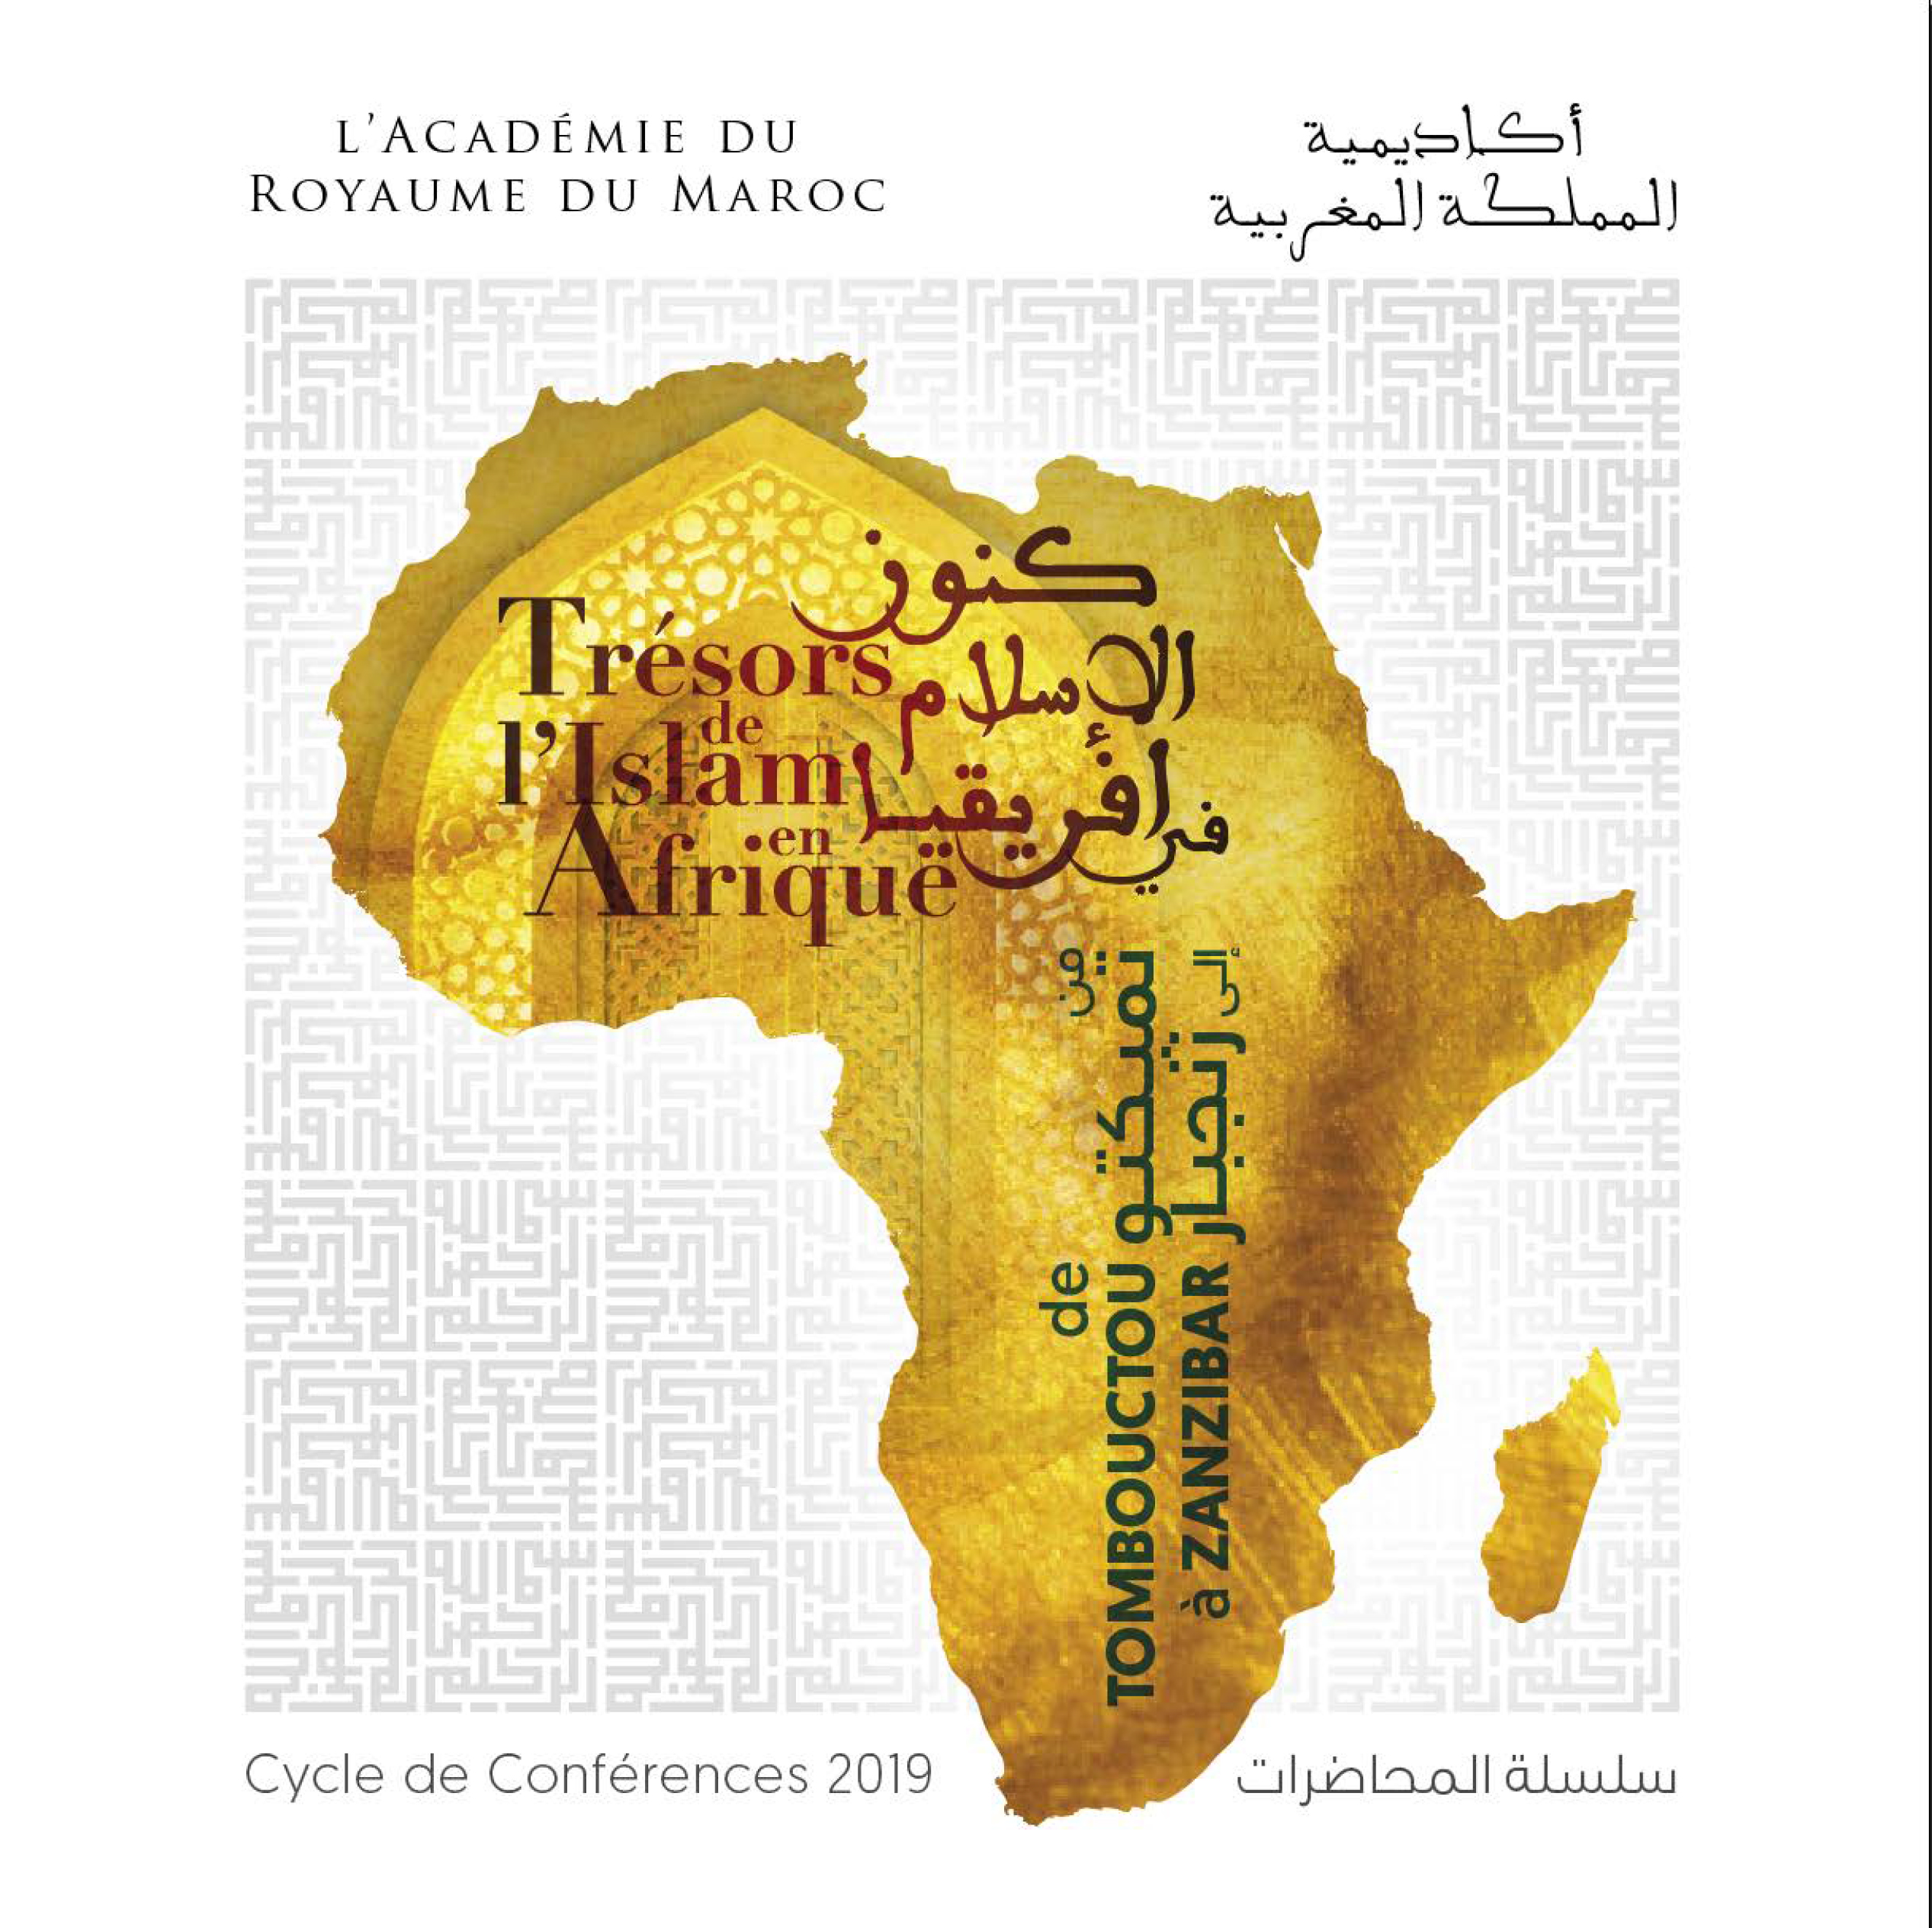 Islam, commerce et royaumes courtiers en Afrique au Moyen-Âge